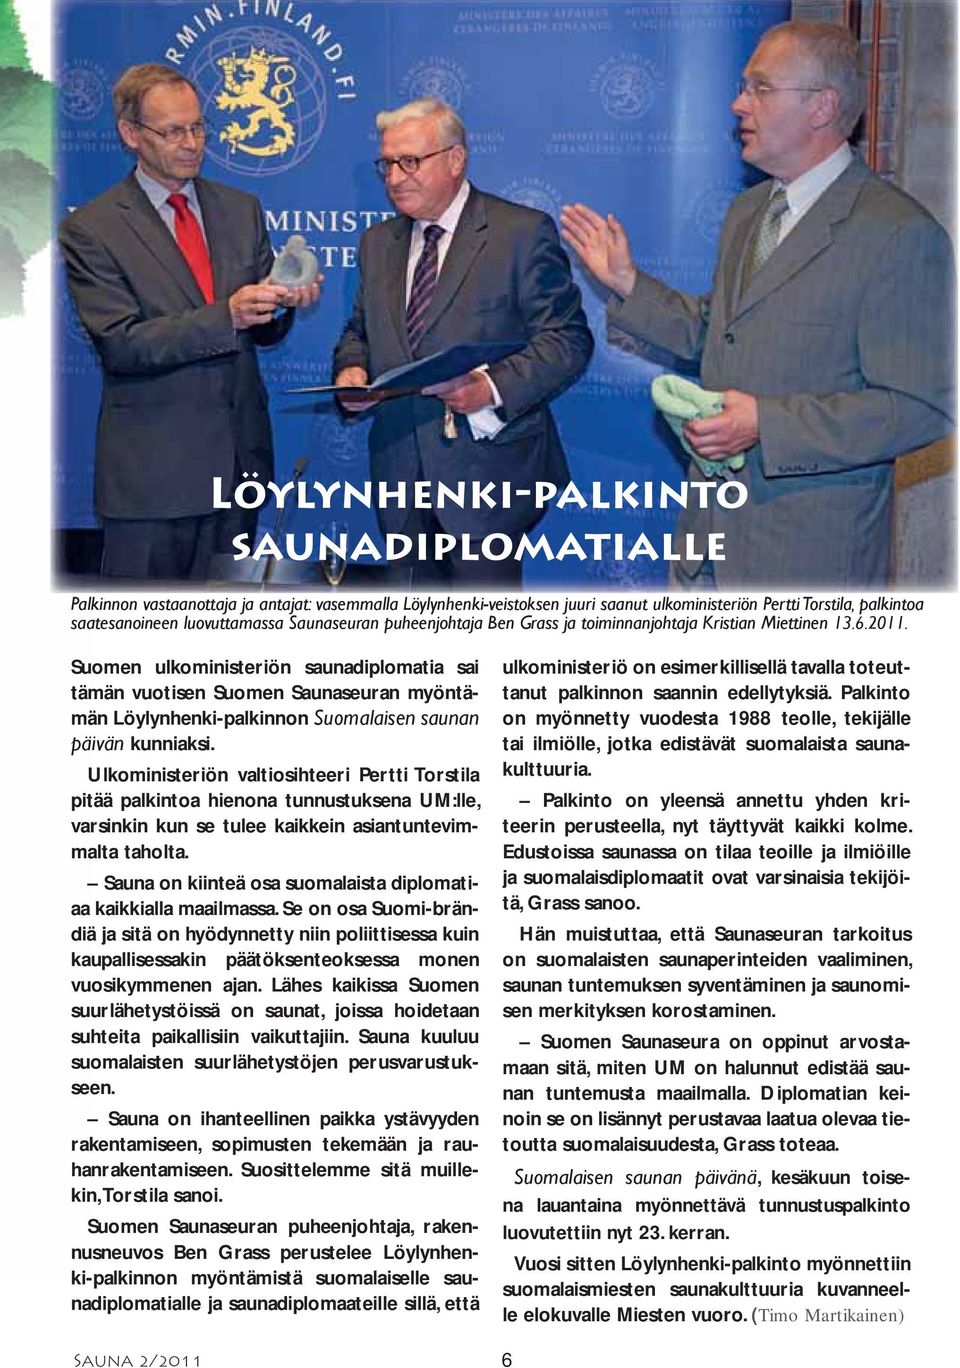 Suomen ulkoministeriön saunadiplomatia sai tämän vuotisen Suomen Saunaseuran myöntämän Löylynhenki-palkinnon Suomalaisen saunan päivän kunniaksi.